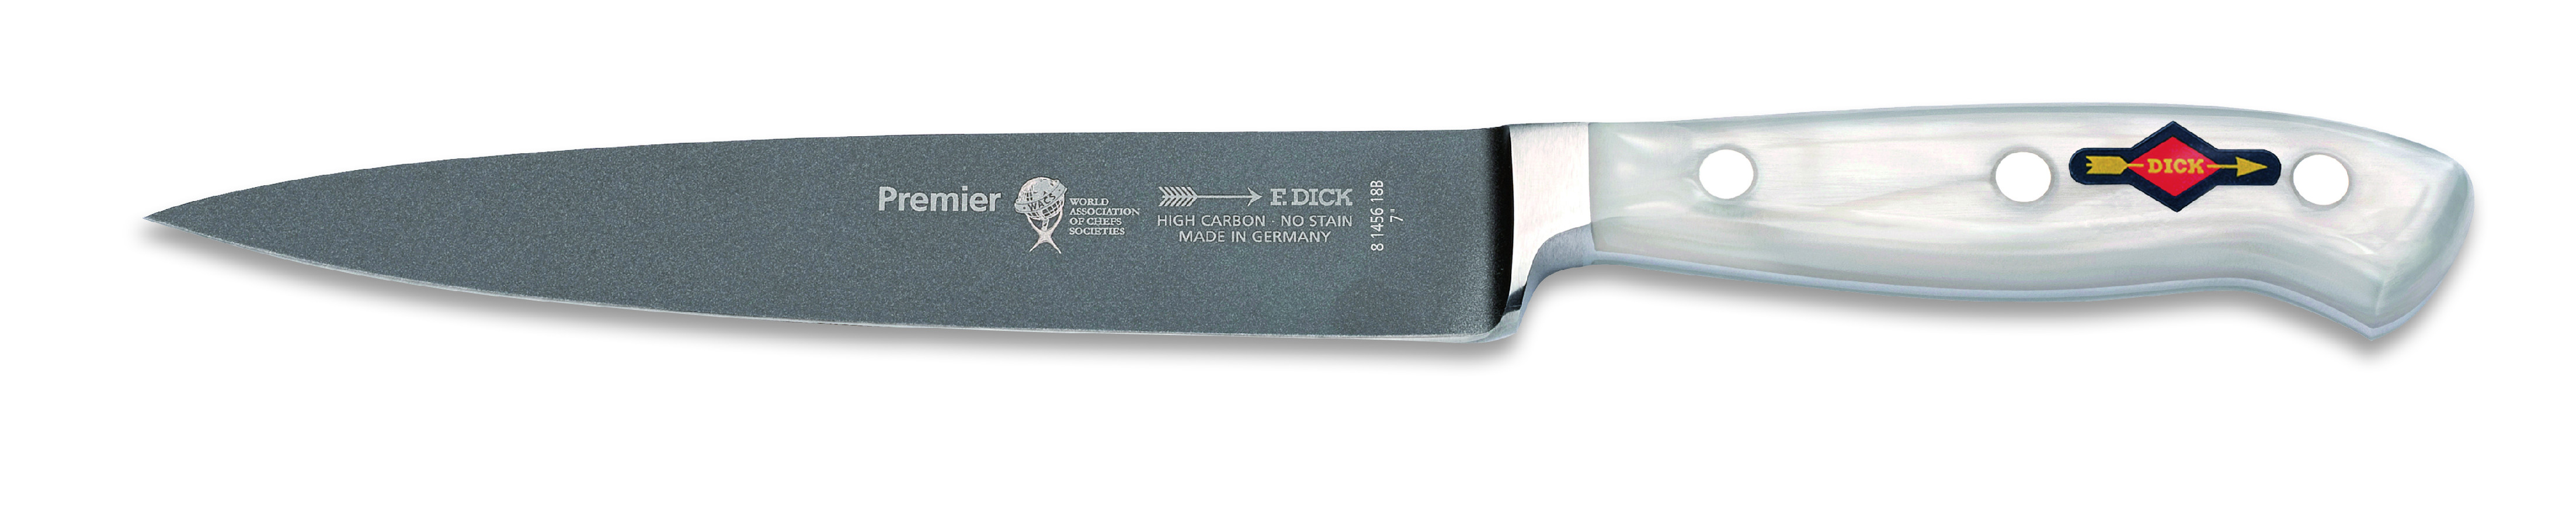 Dranžírovací nůž kovaný Premier WACS v délce 18 cm